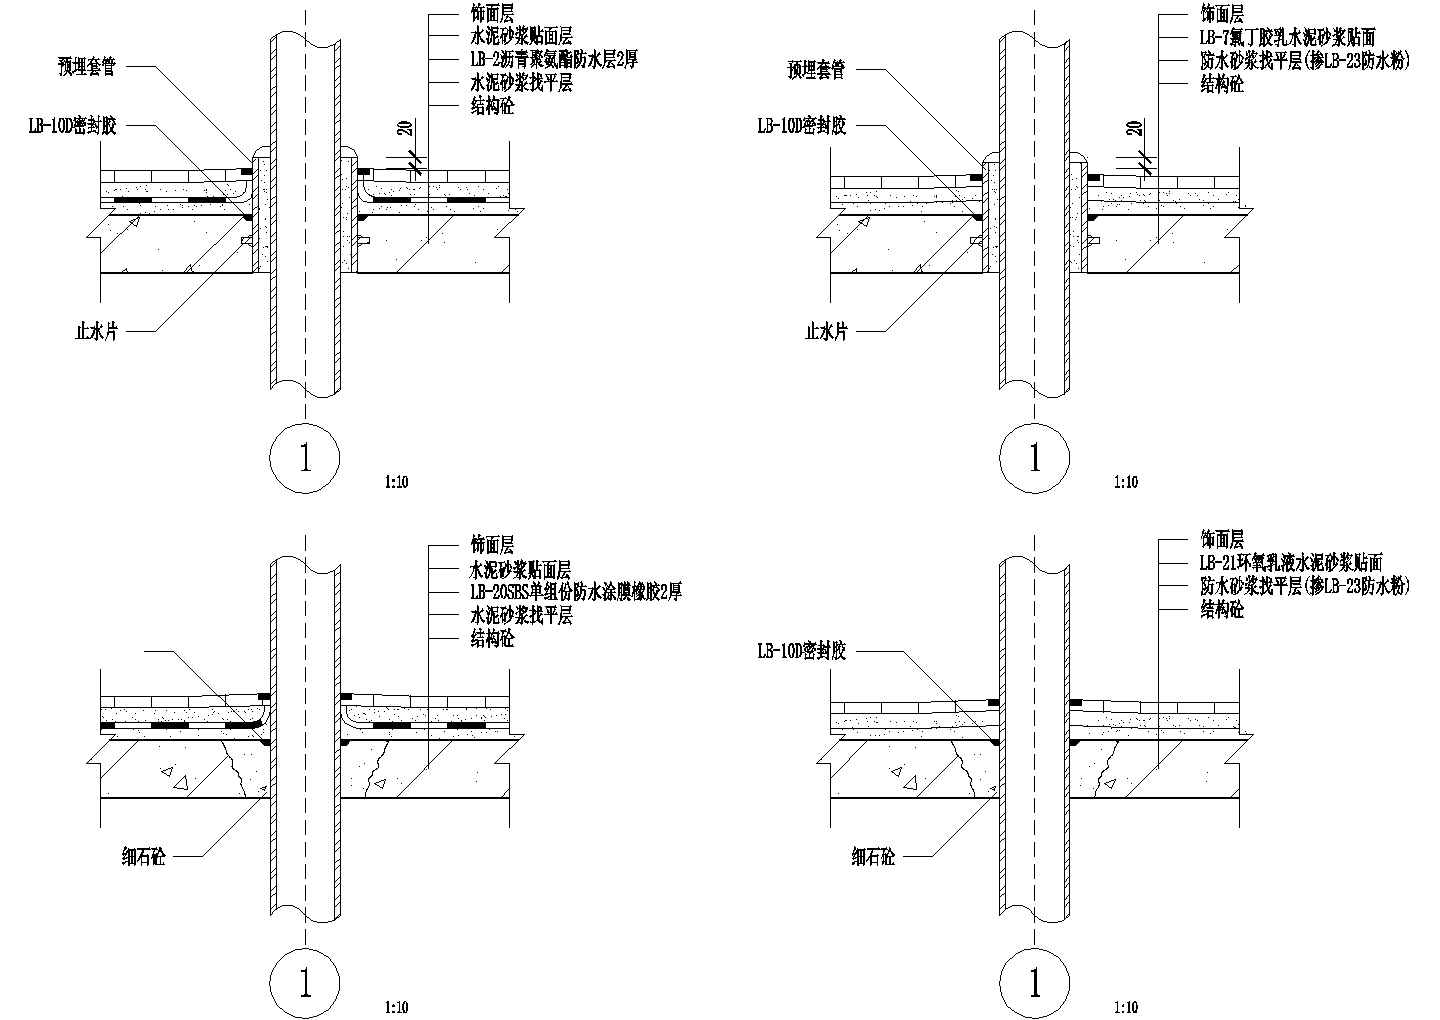 002-穿板管口密封口节点图CAD施工图设计